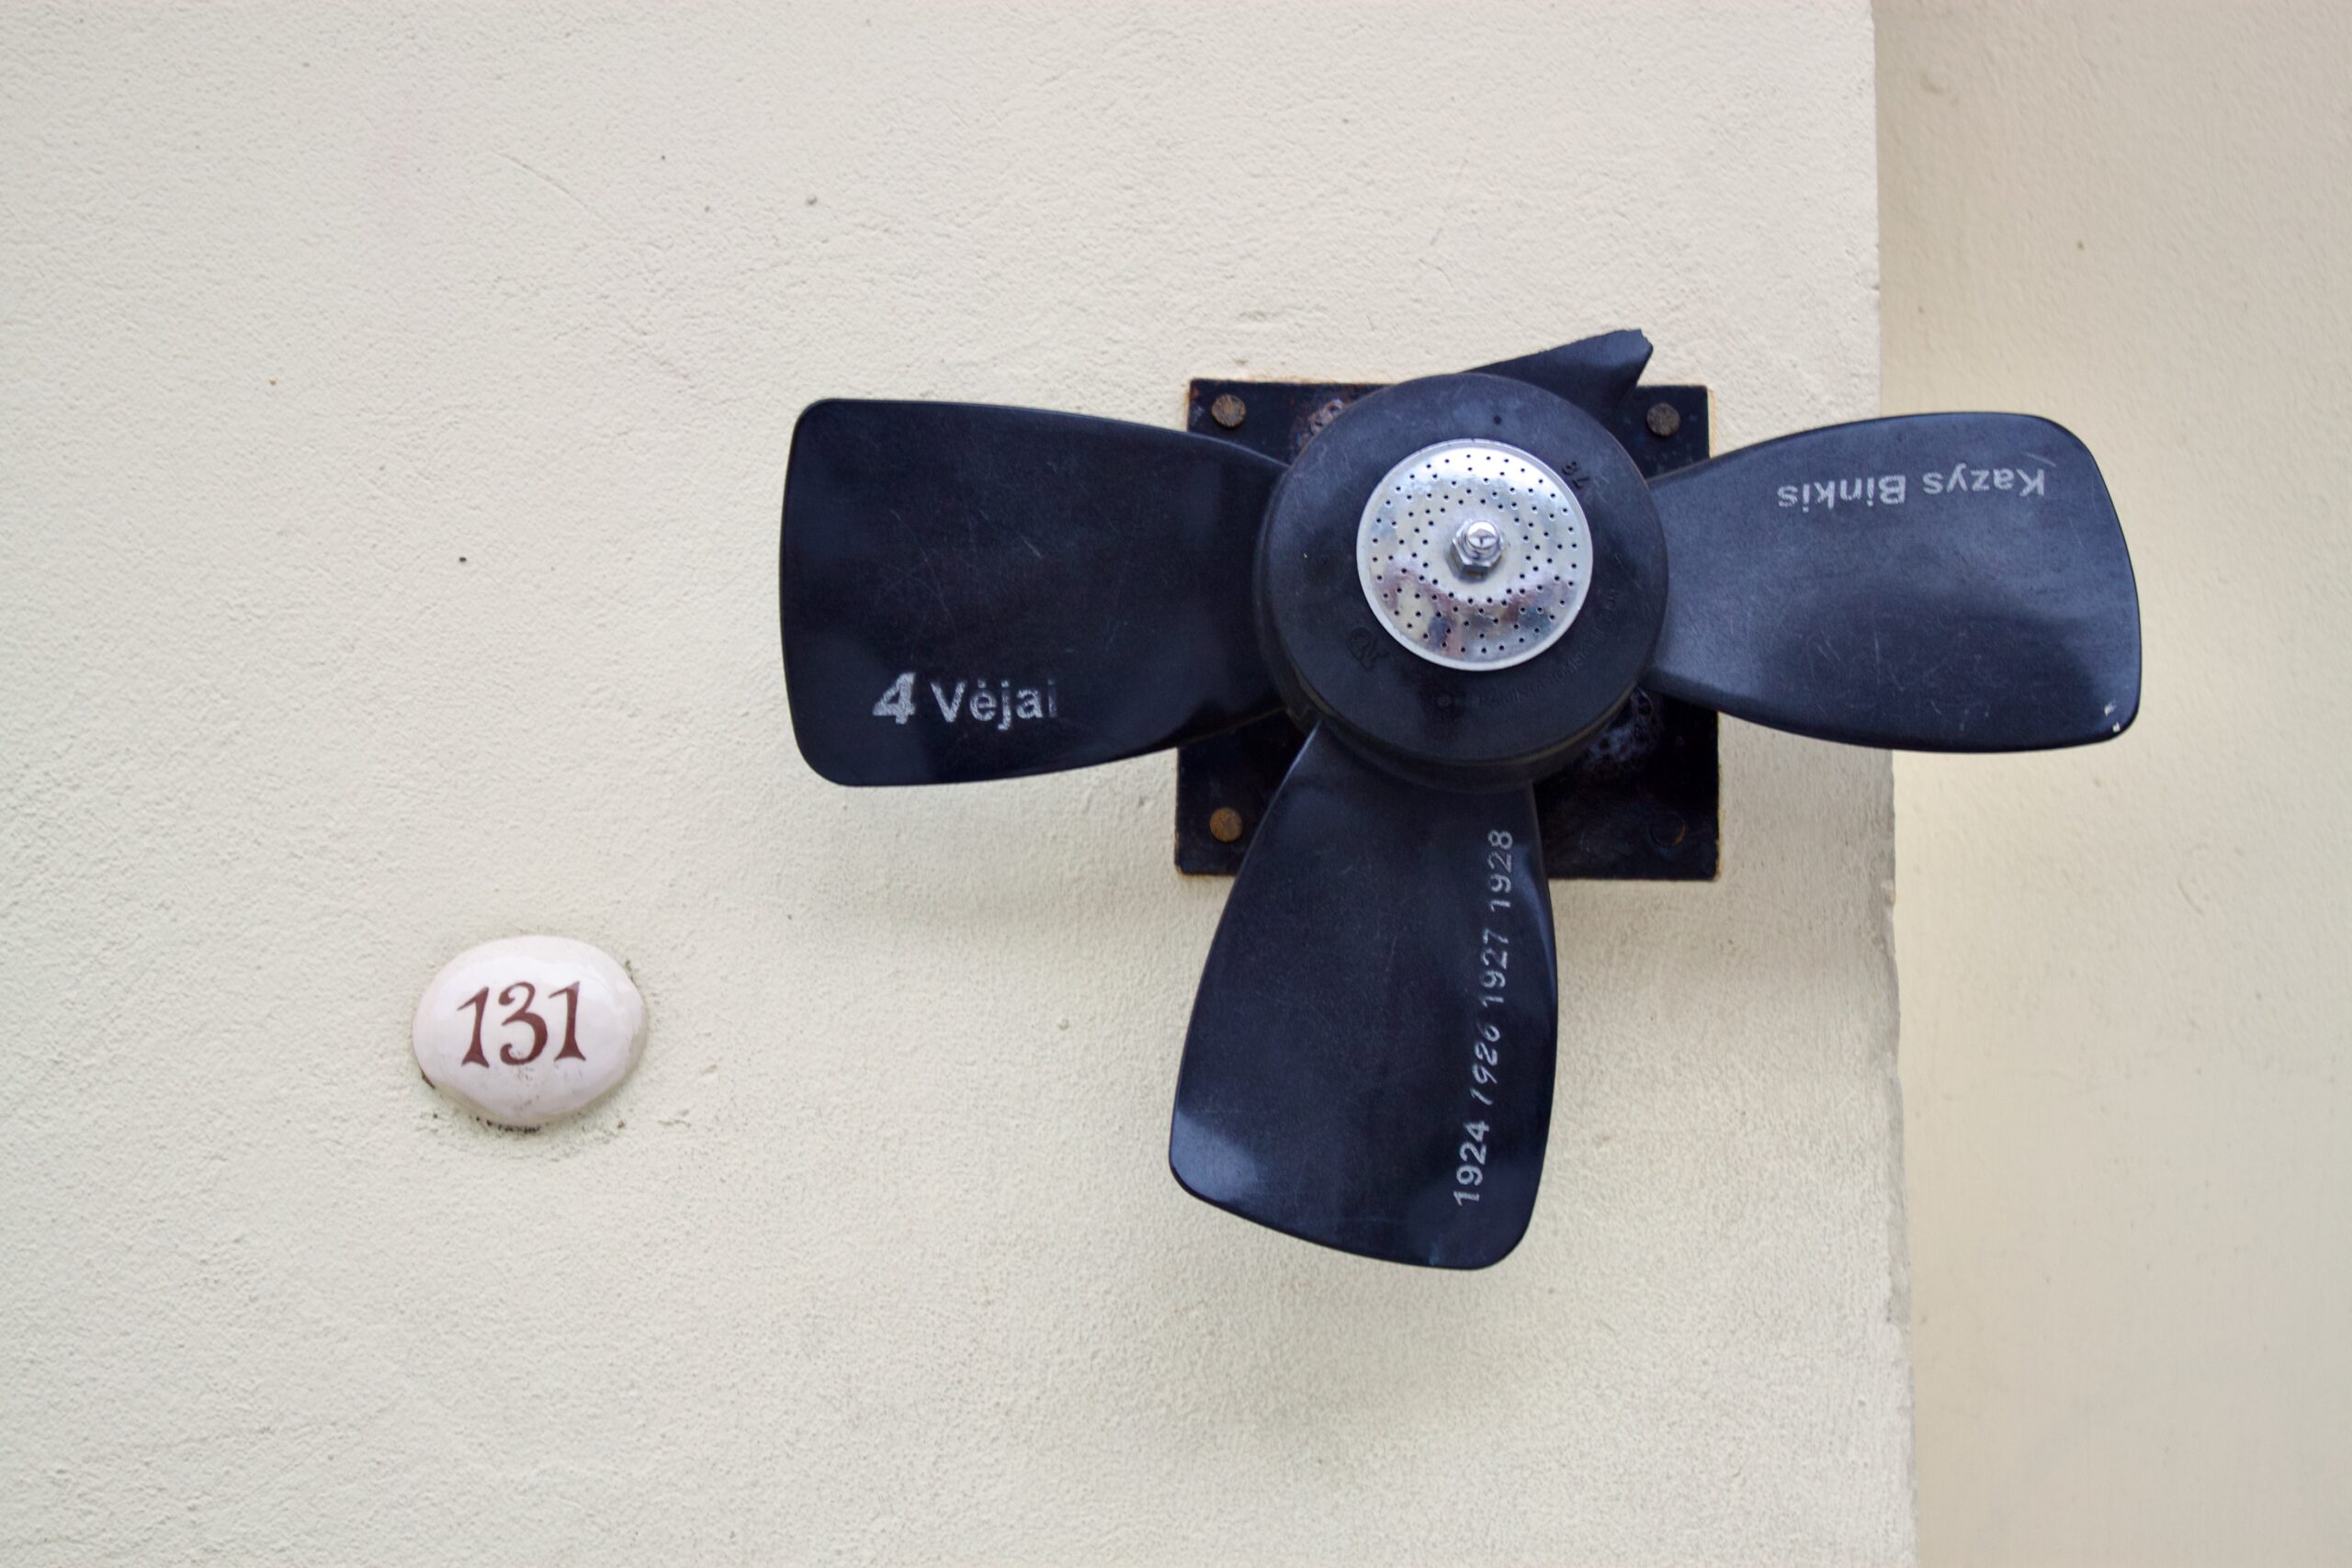 Literature Street In Vilnius - Fan